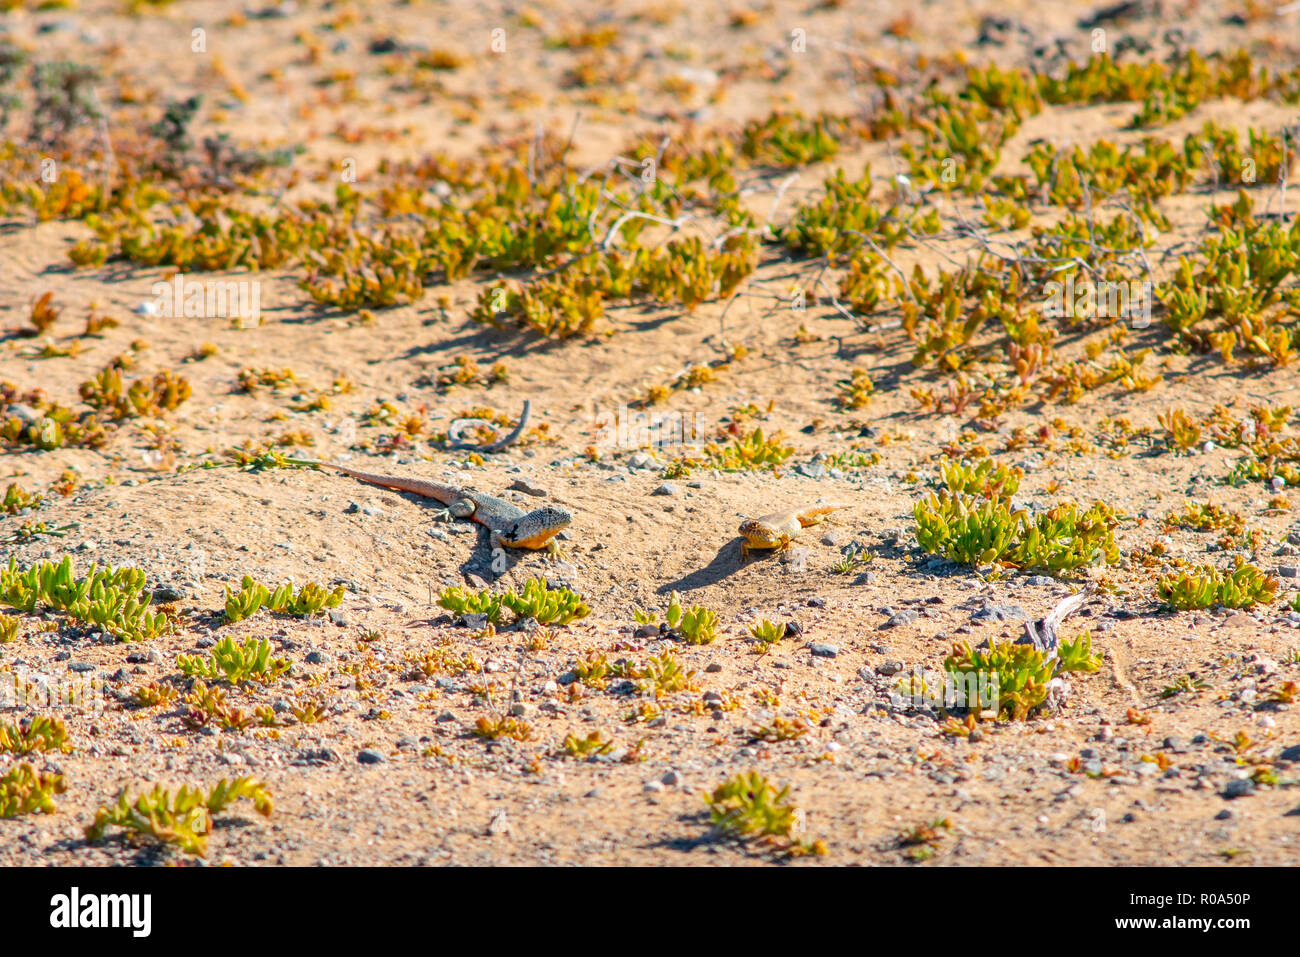 Dos rivales de lagartijas tomando sol en medio del desierto Foto de stock